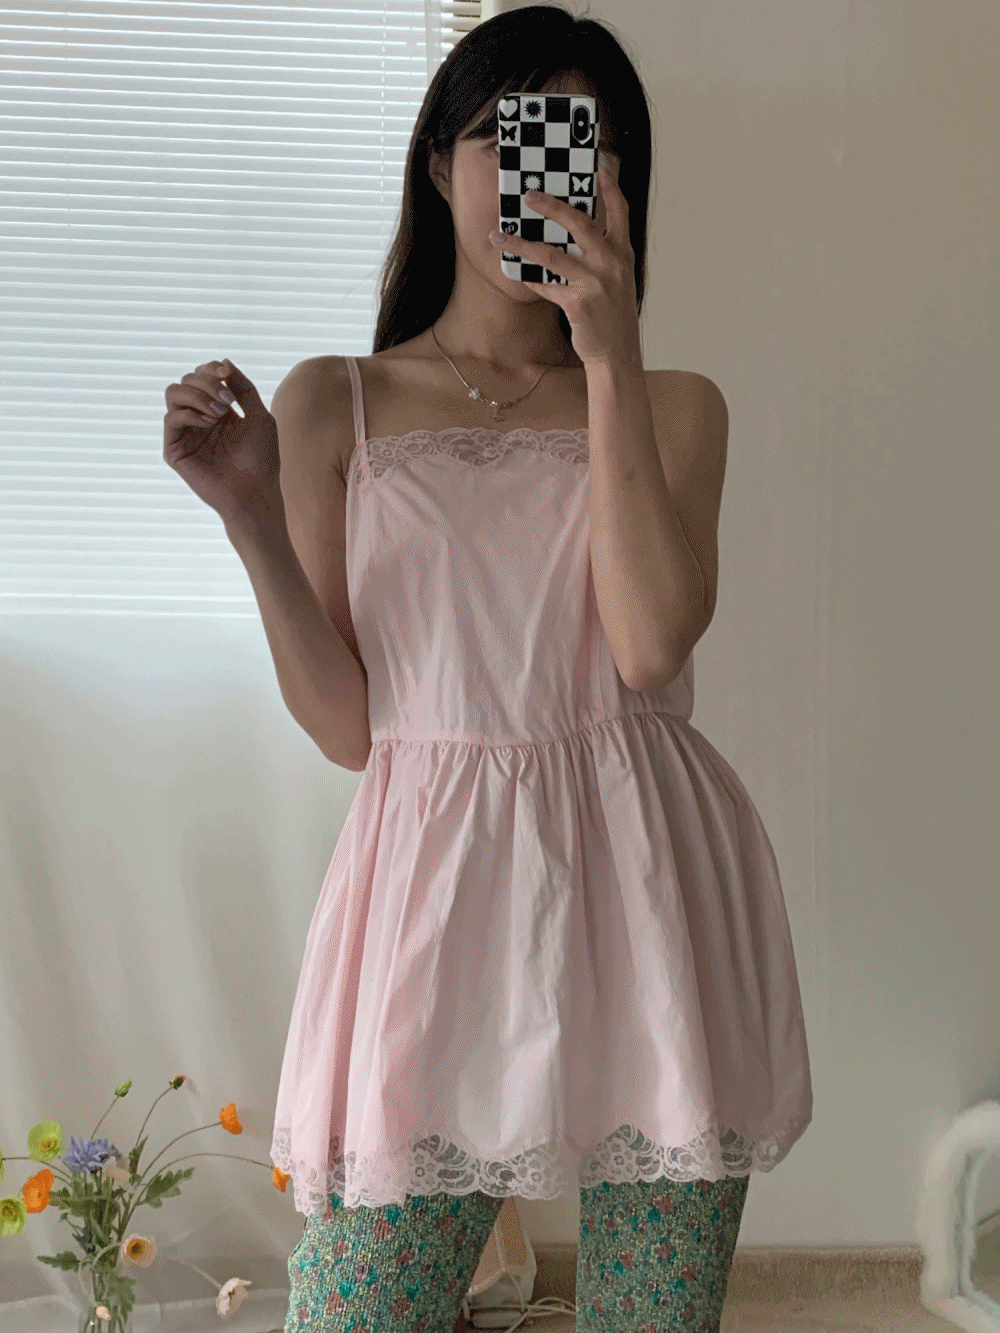 [PREMIUM] [Dress/ Top] Dandelion lace mini dress / 4 colors